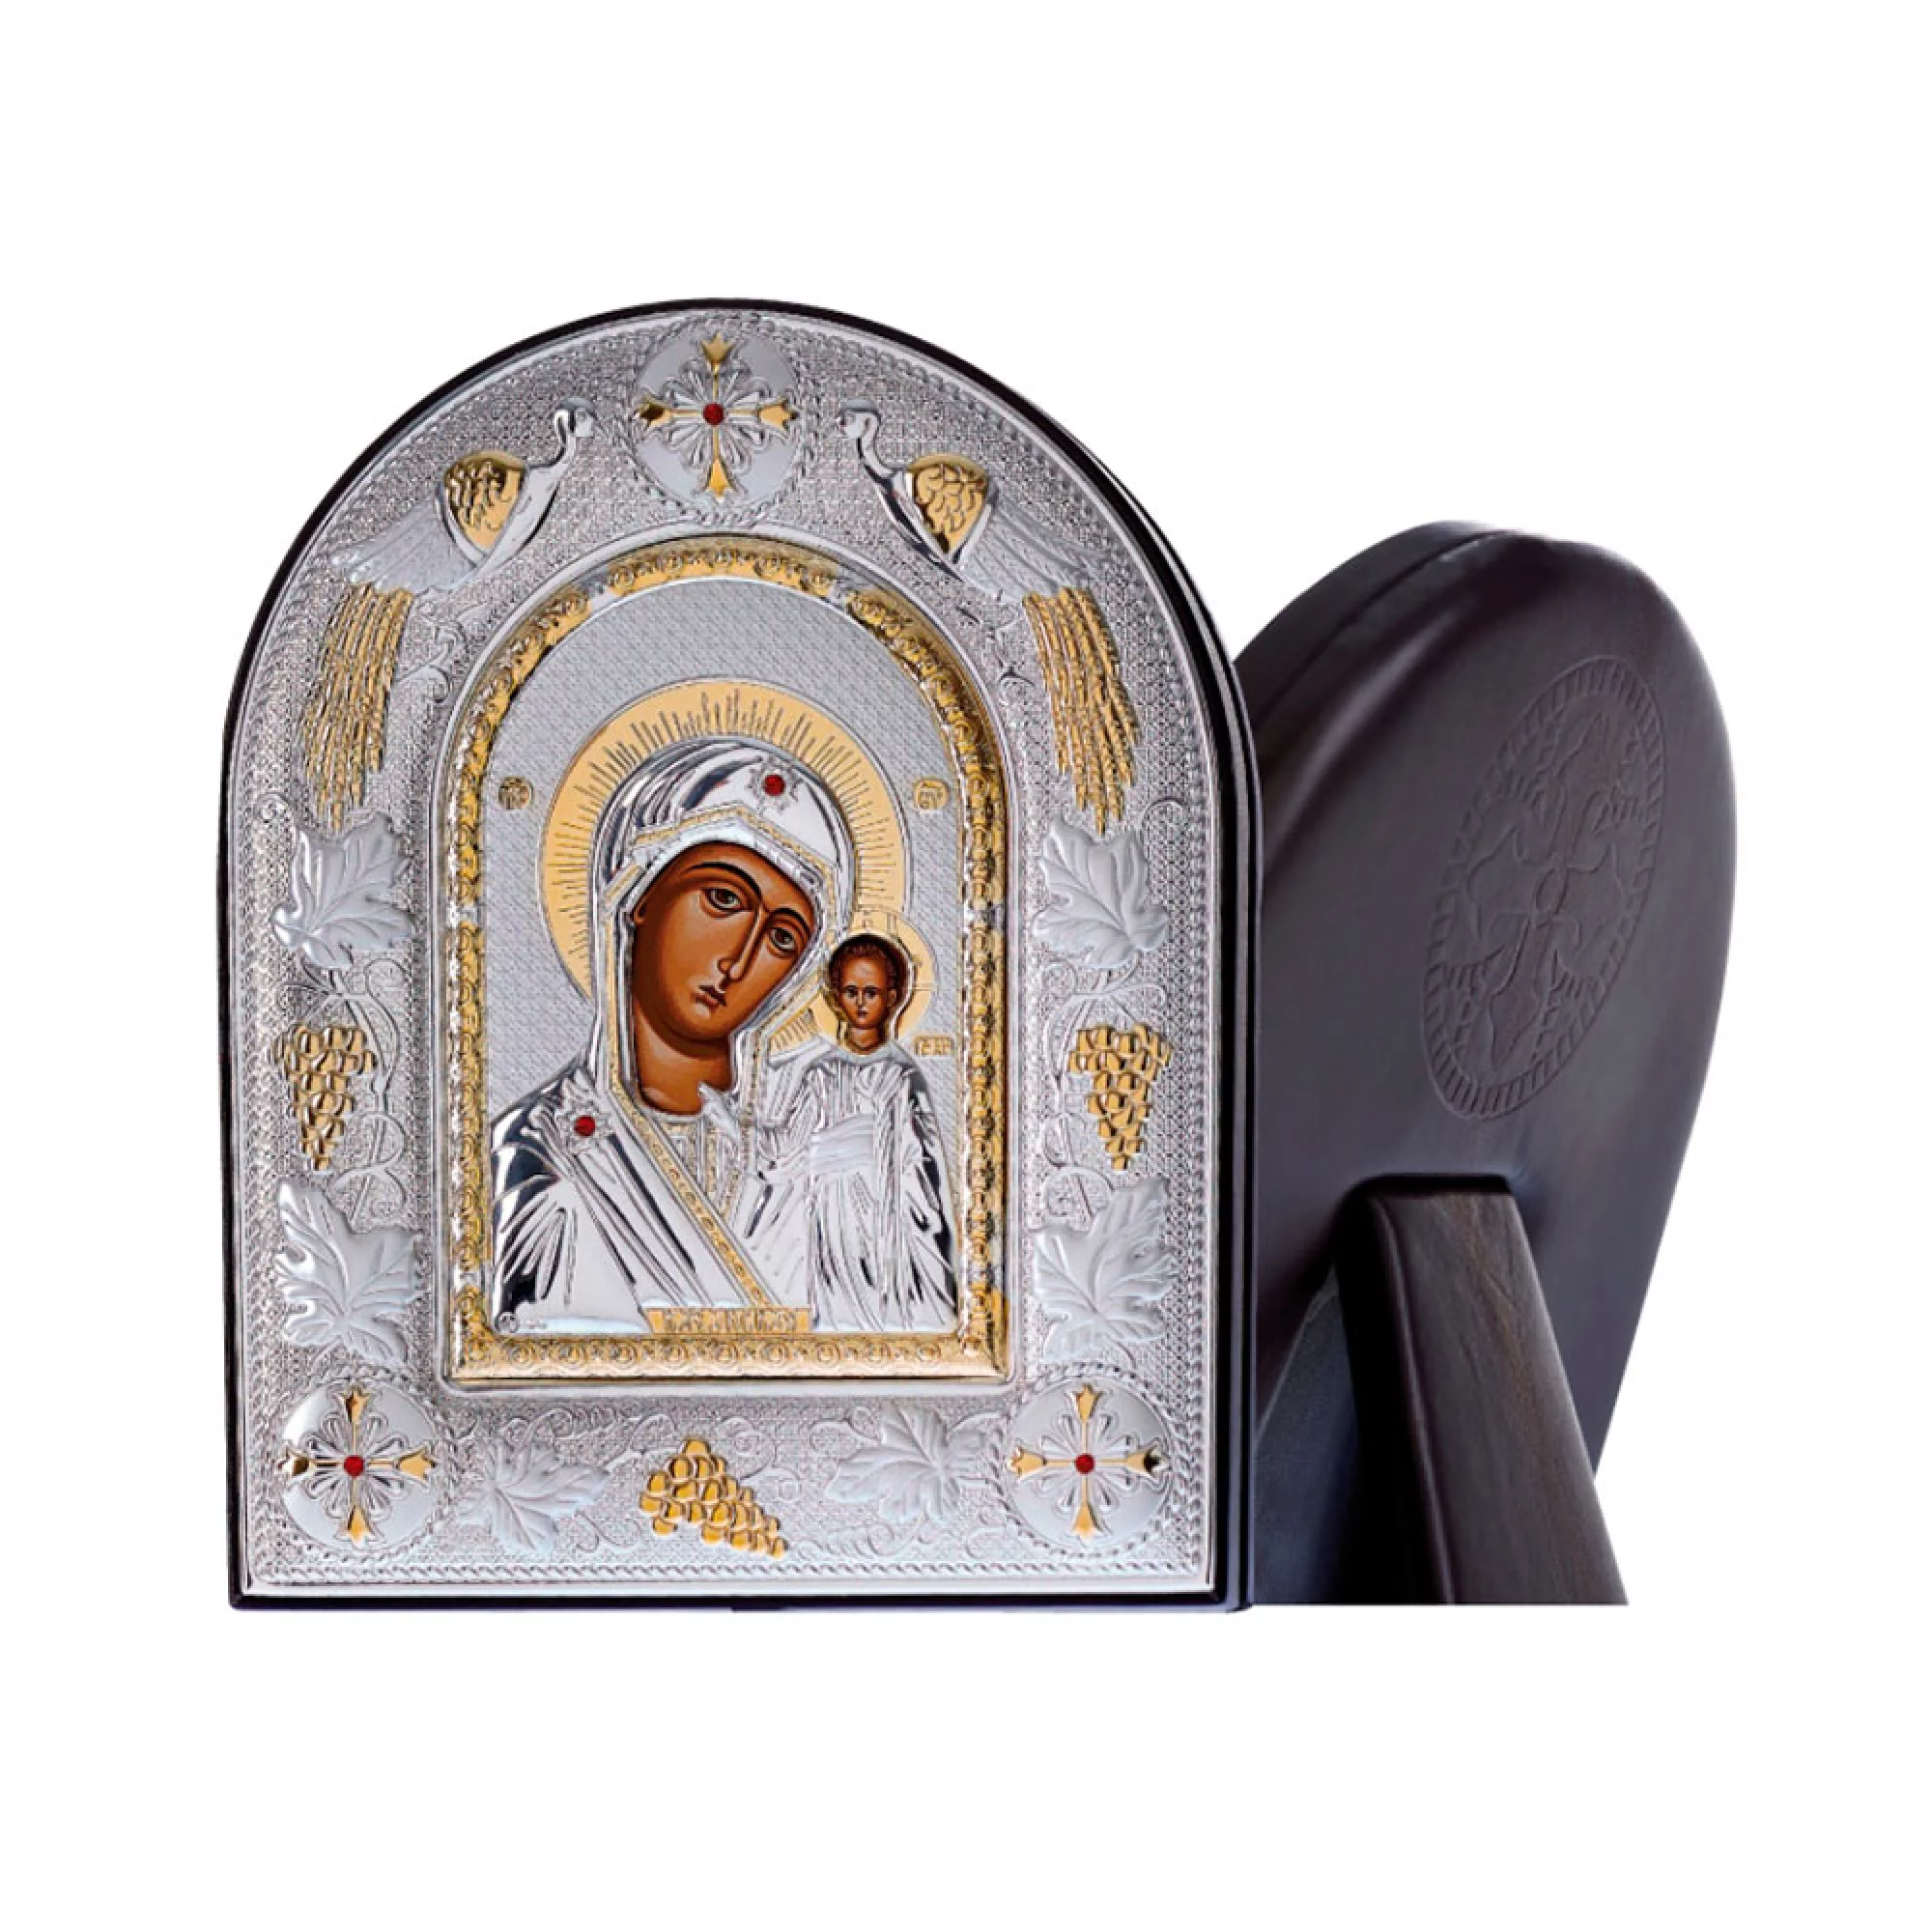 Икона Пресвятая Богородица "Казанская" 200х250 мм. - 1438391 – изображение 2